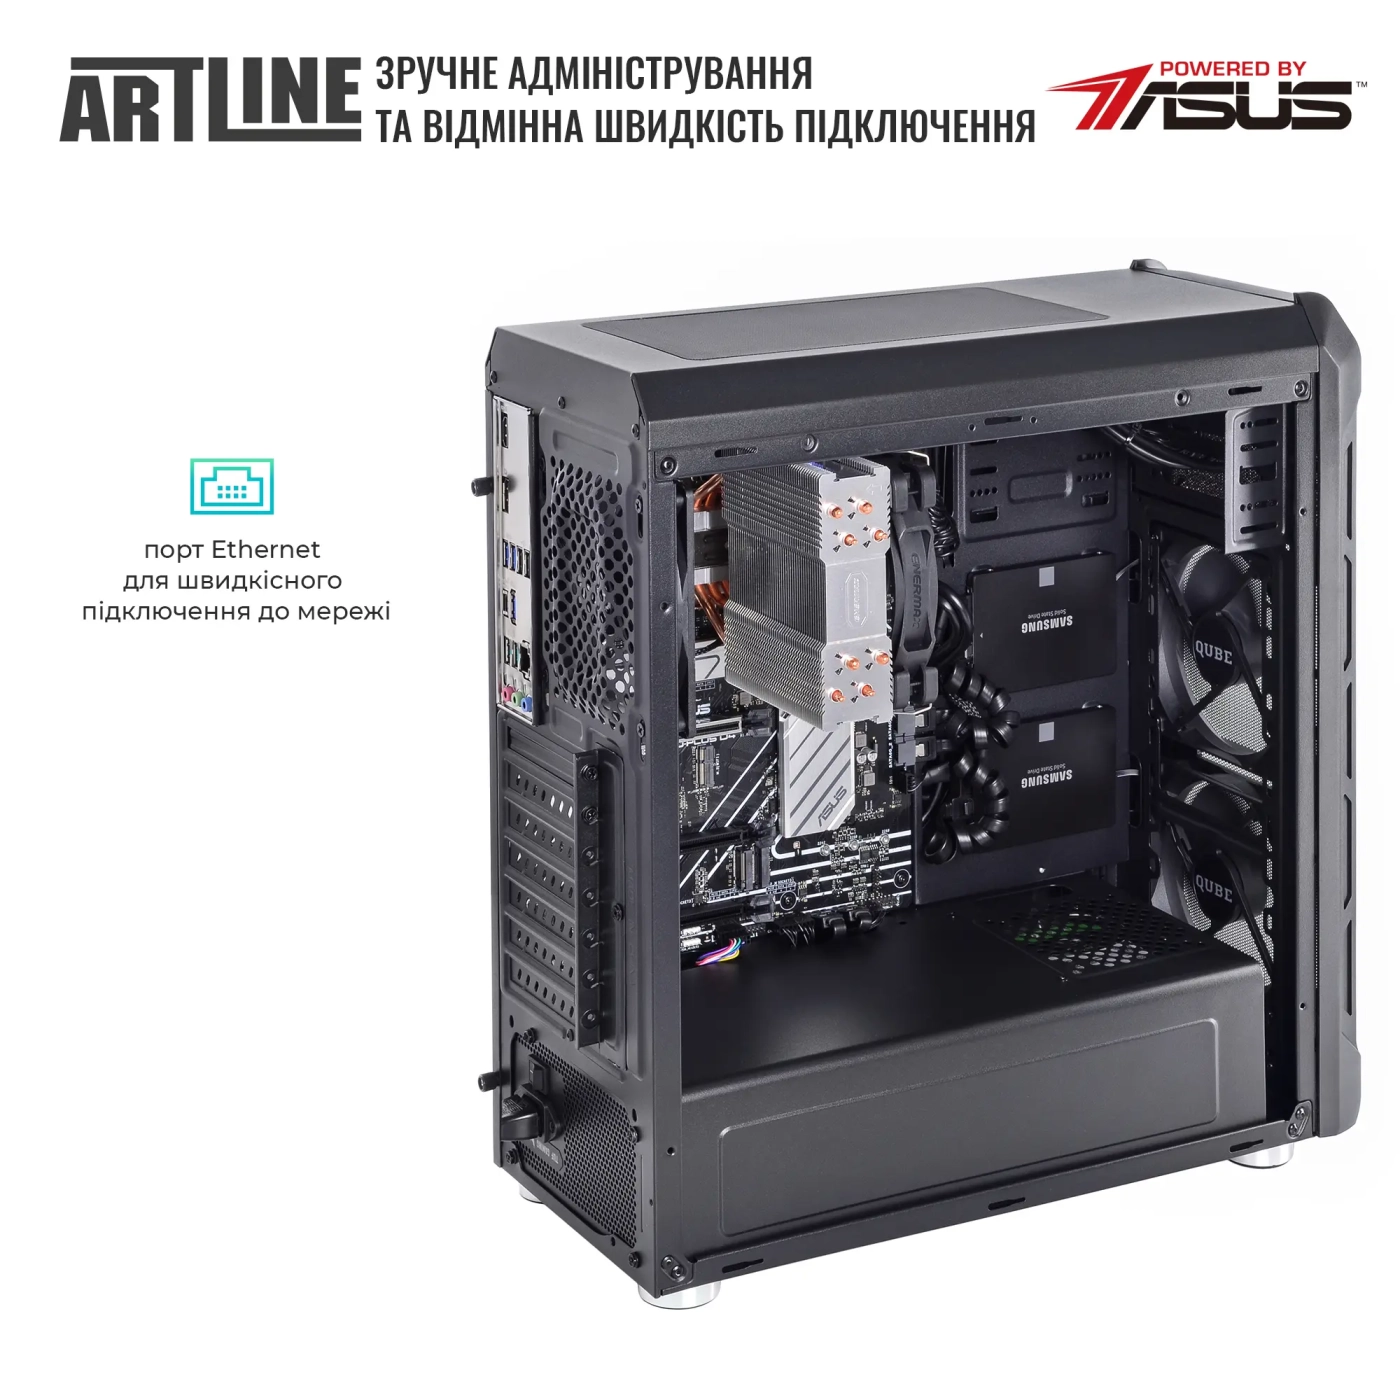 Купить Сервер ARTLINE Business T27 (T27v33) - фото 7